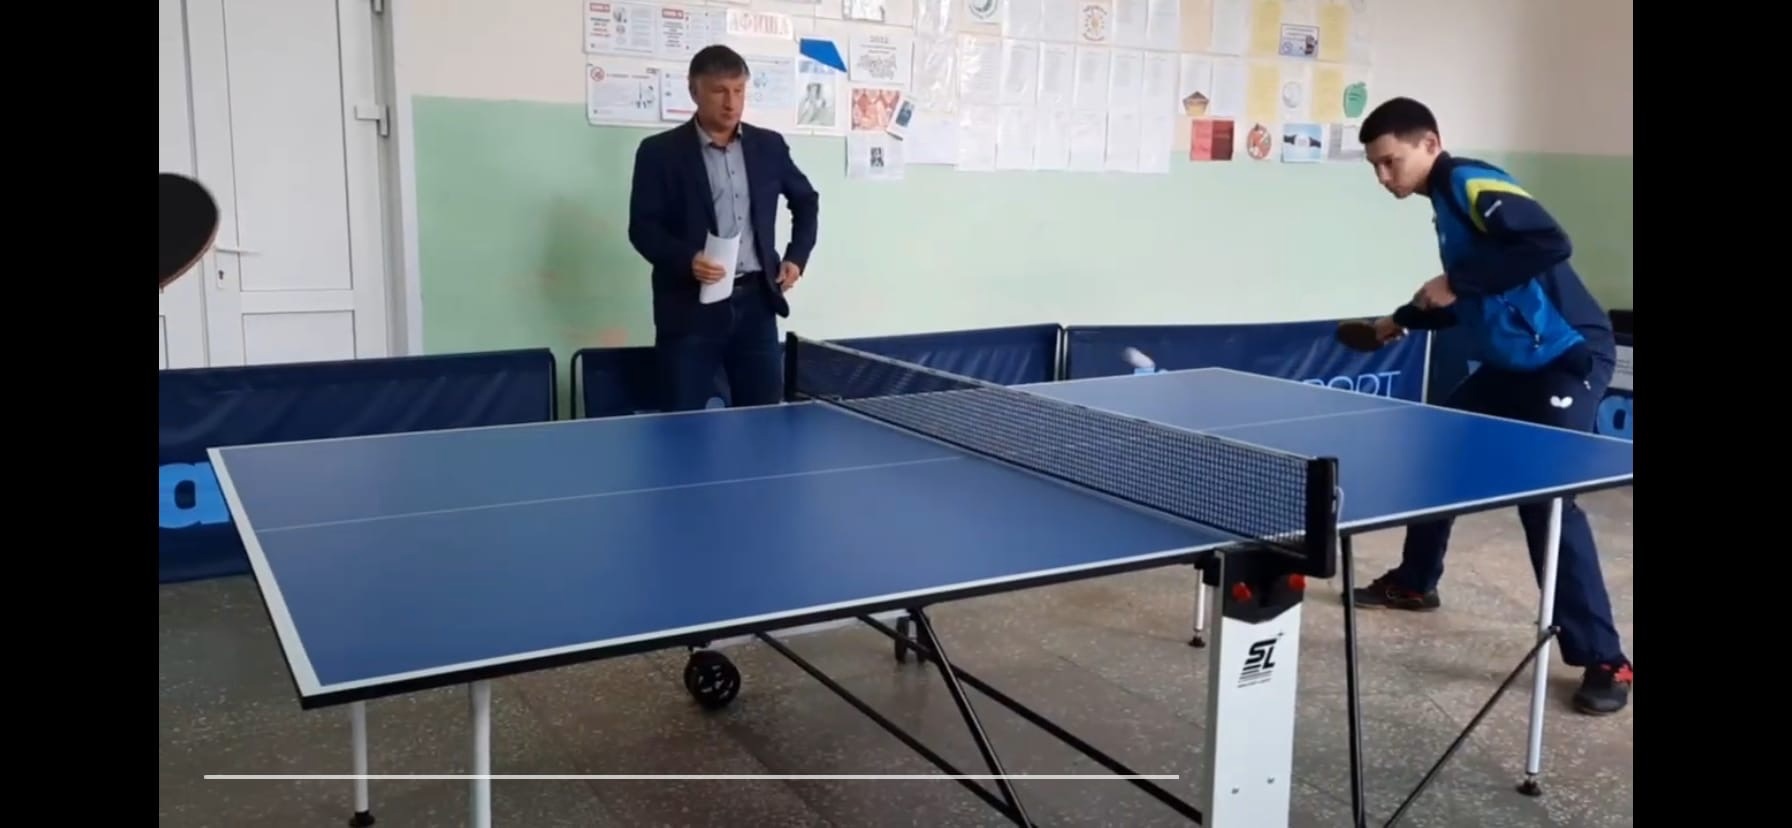 «Факел-Газпром» подарил стол для настольного тенниса селу в Переволоцком районе